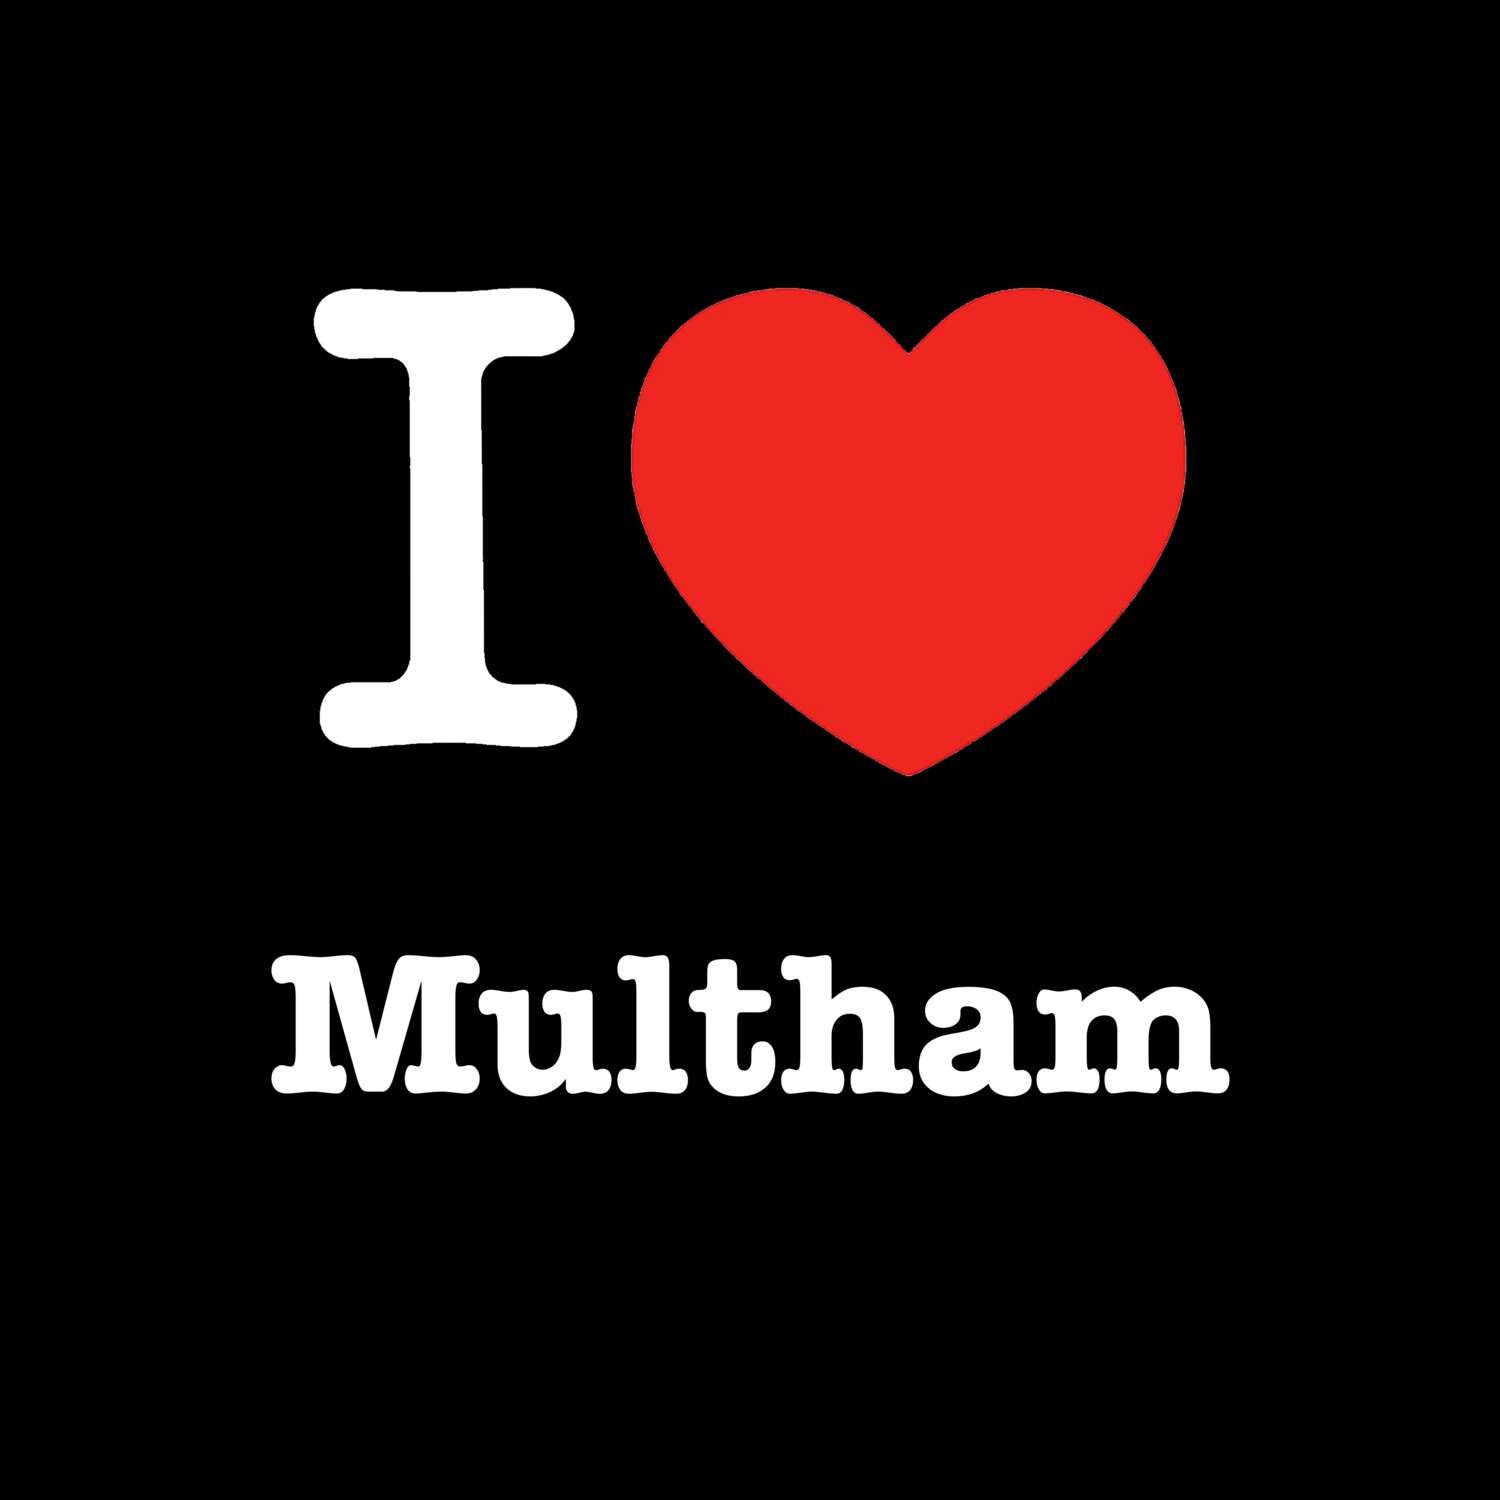 Multham T-Shirt »I love«